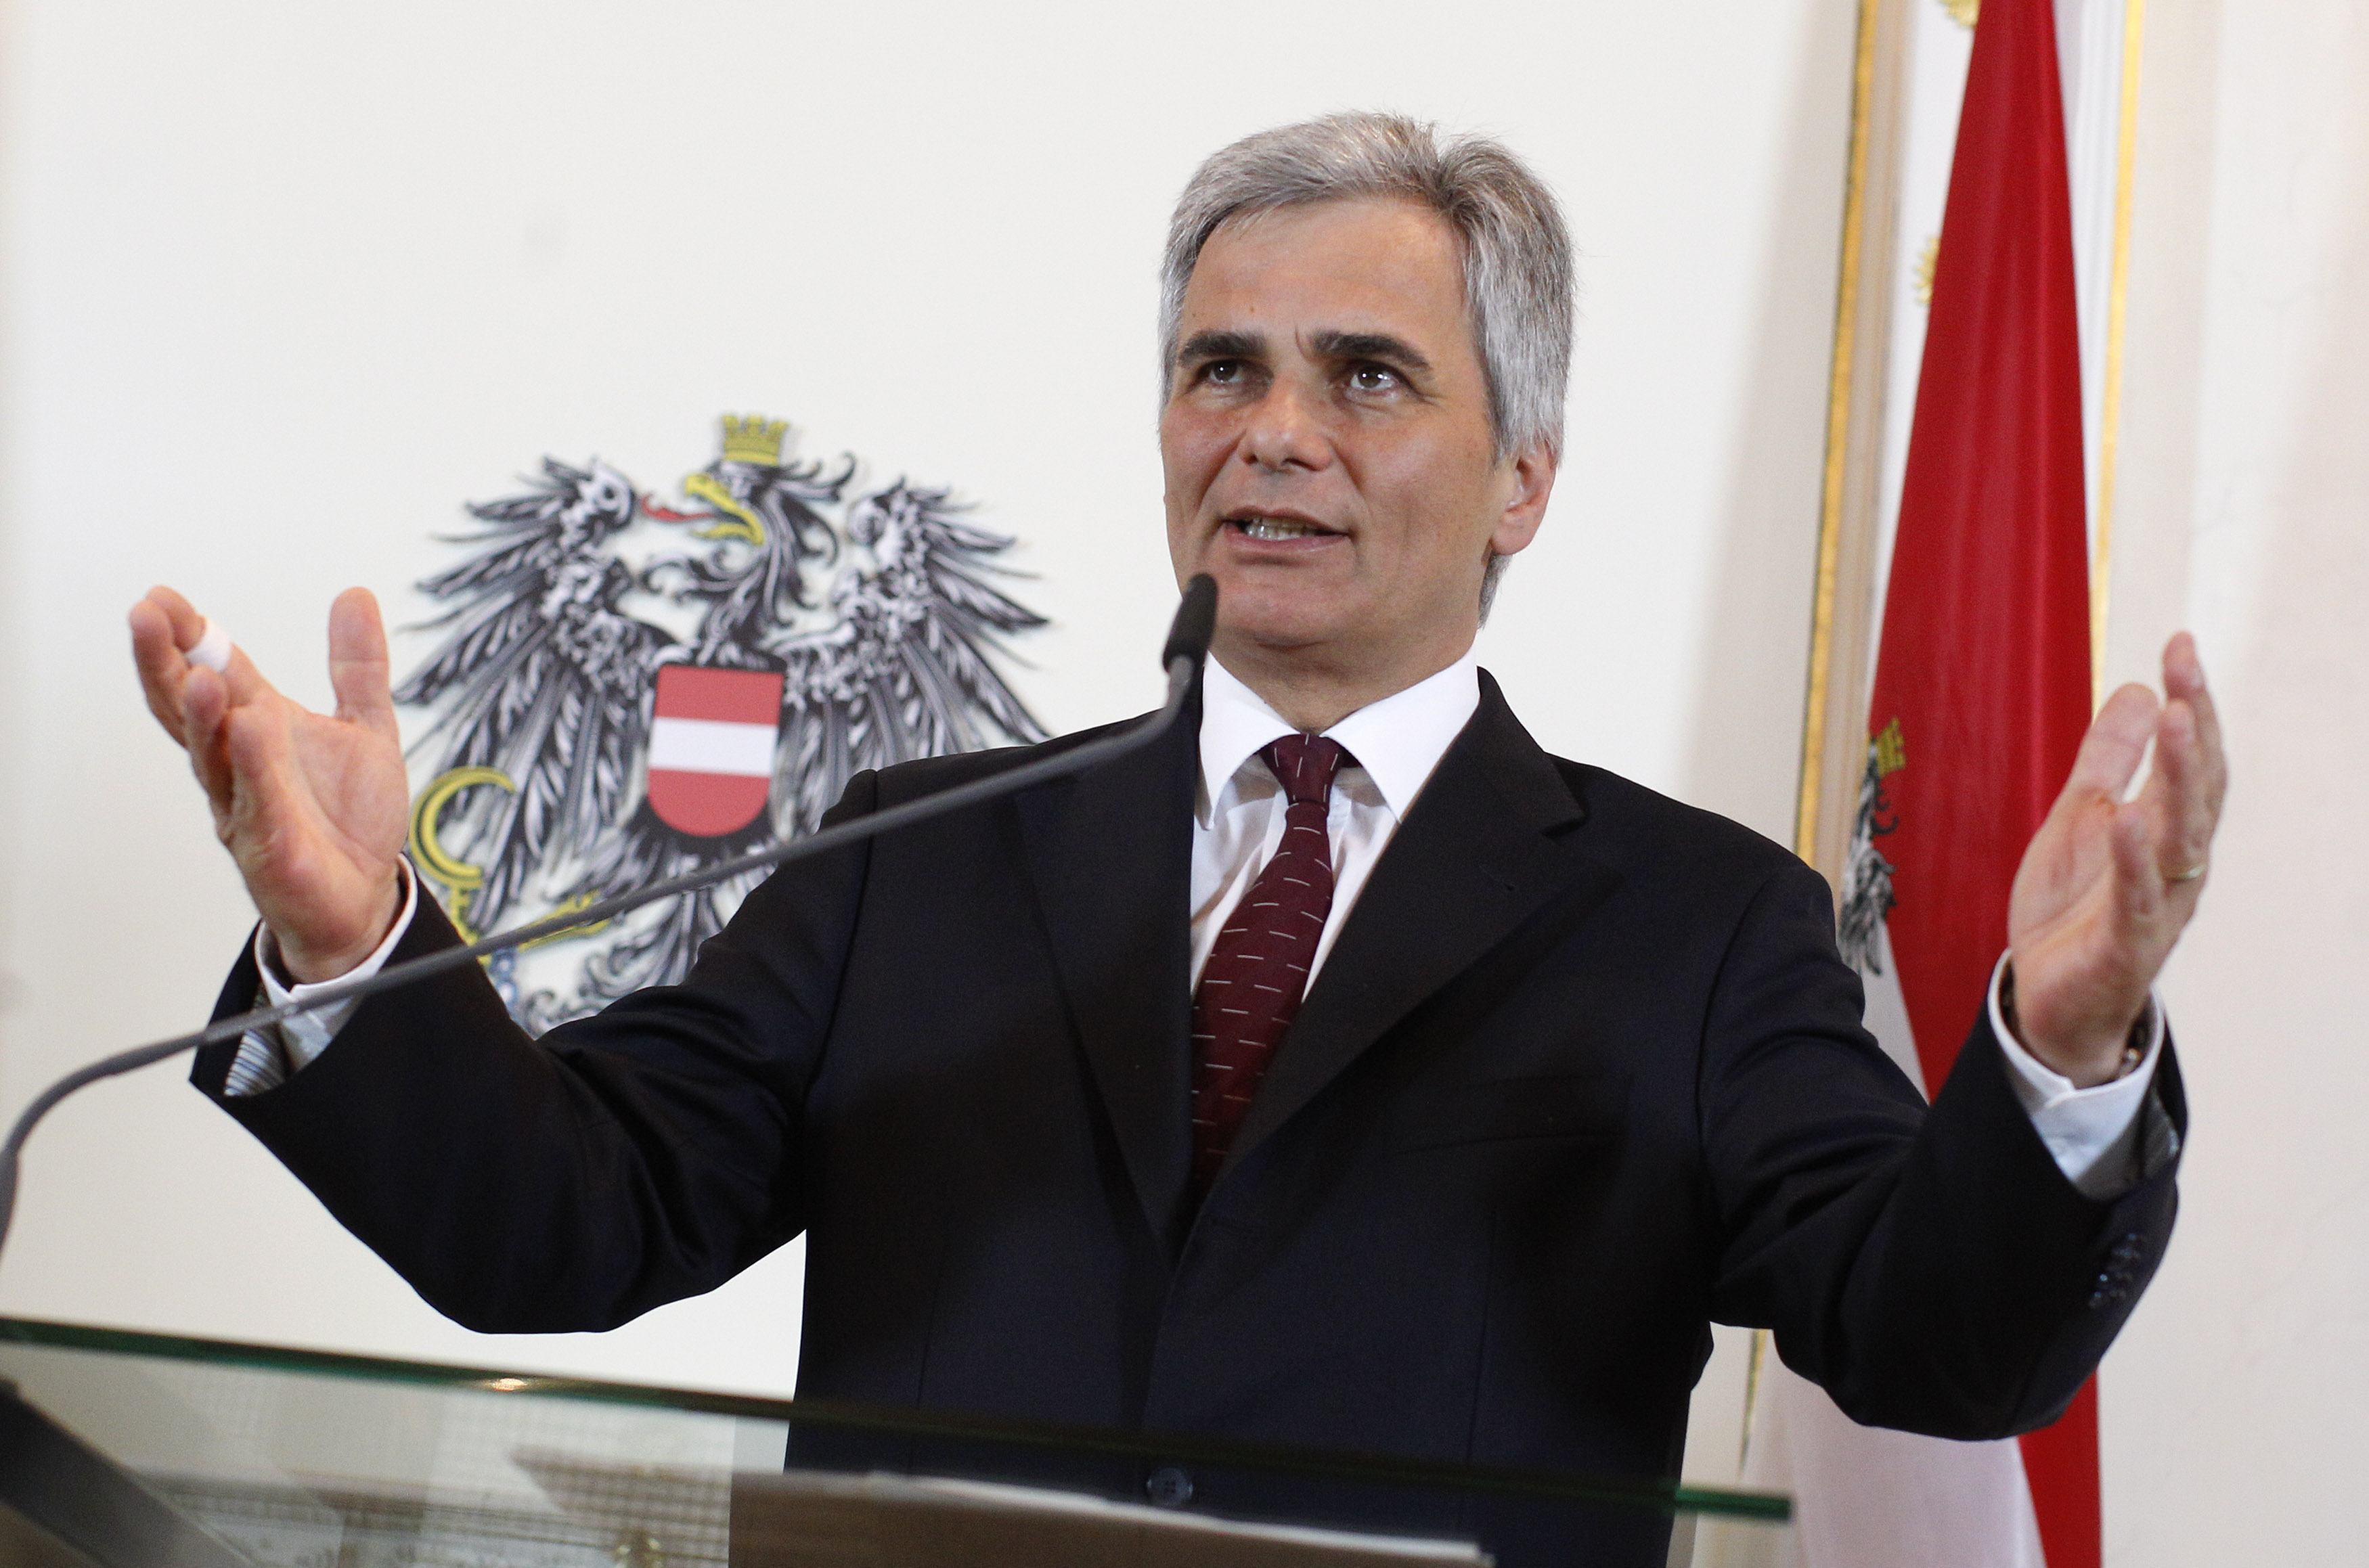 Αυστριακός Καγκελάριος: “Δραματικό” το αποτέλεσμα των εκλογών στην Ελλάδα